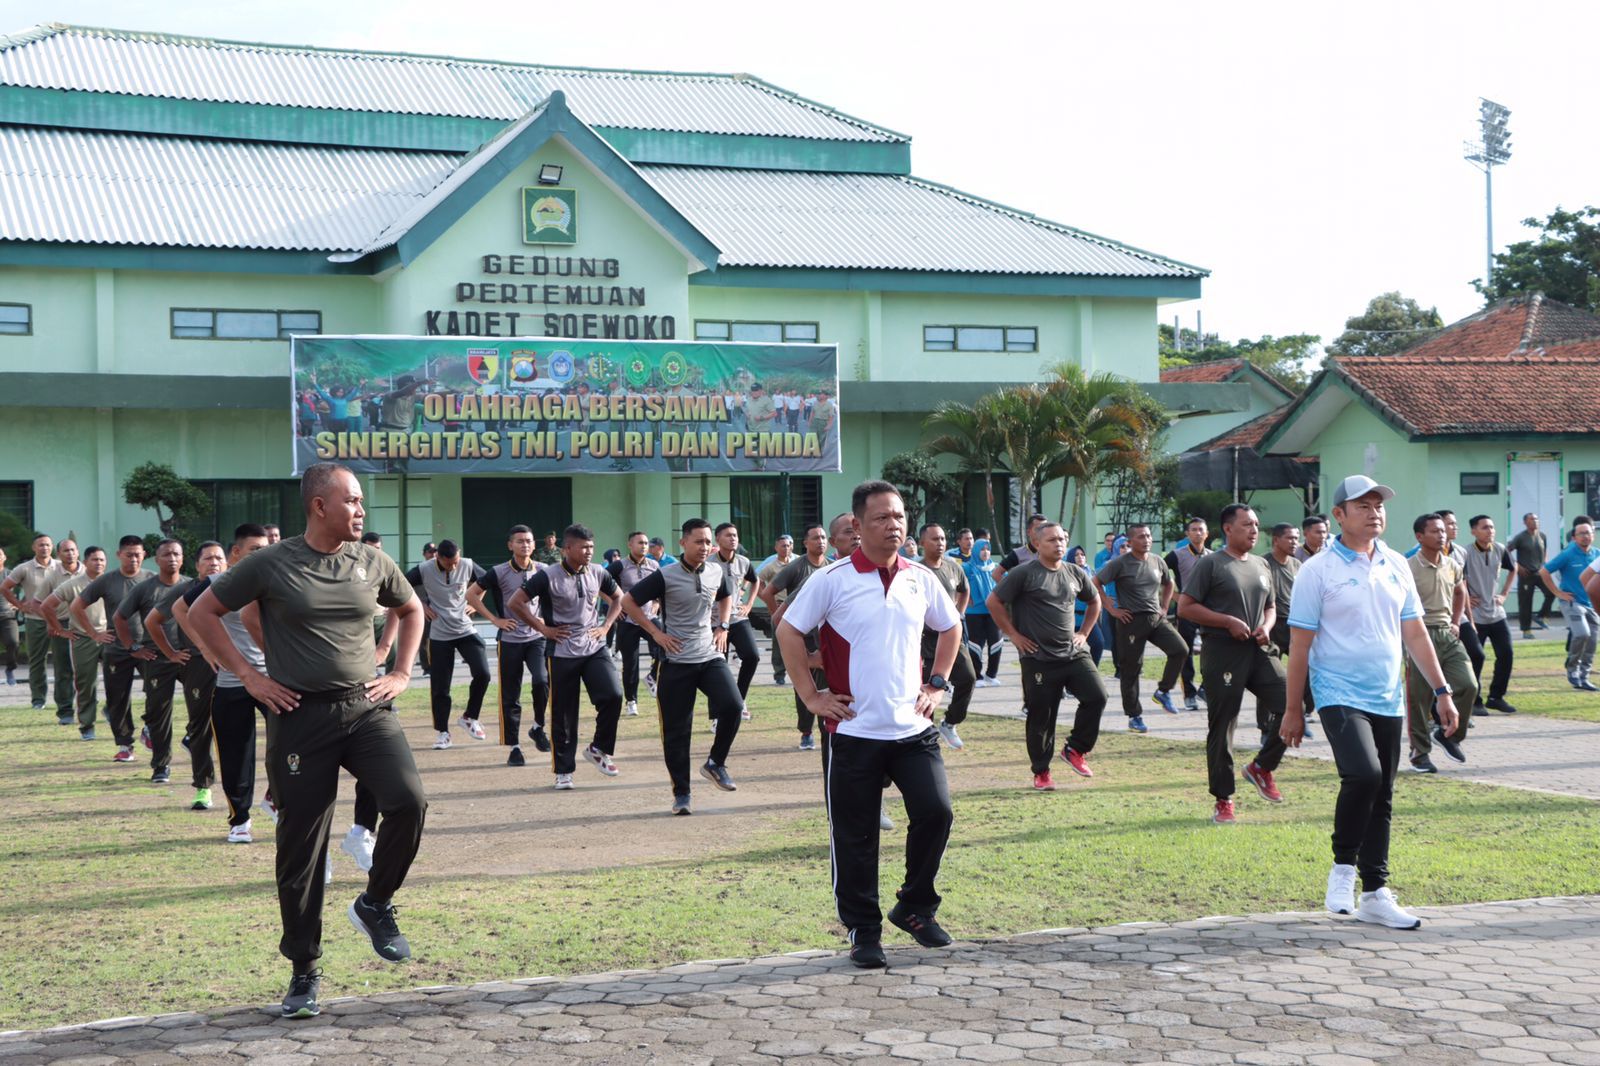 Sinergi TNI-Polri dan Pemerintah, Forkopimda Lamongan Olahraga Bareng